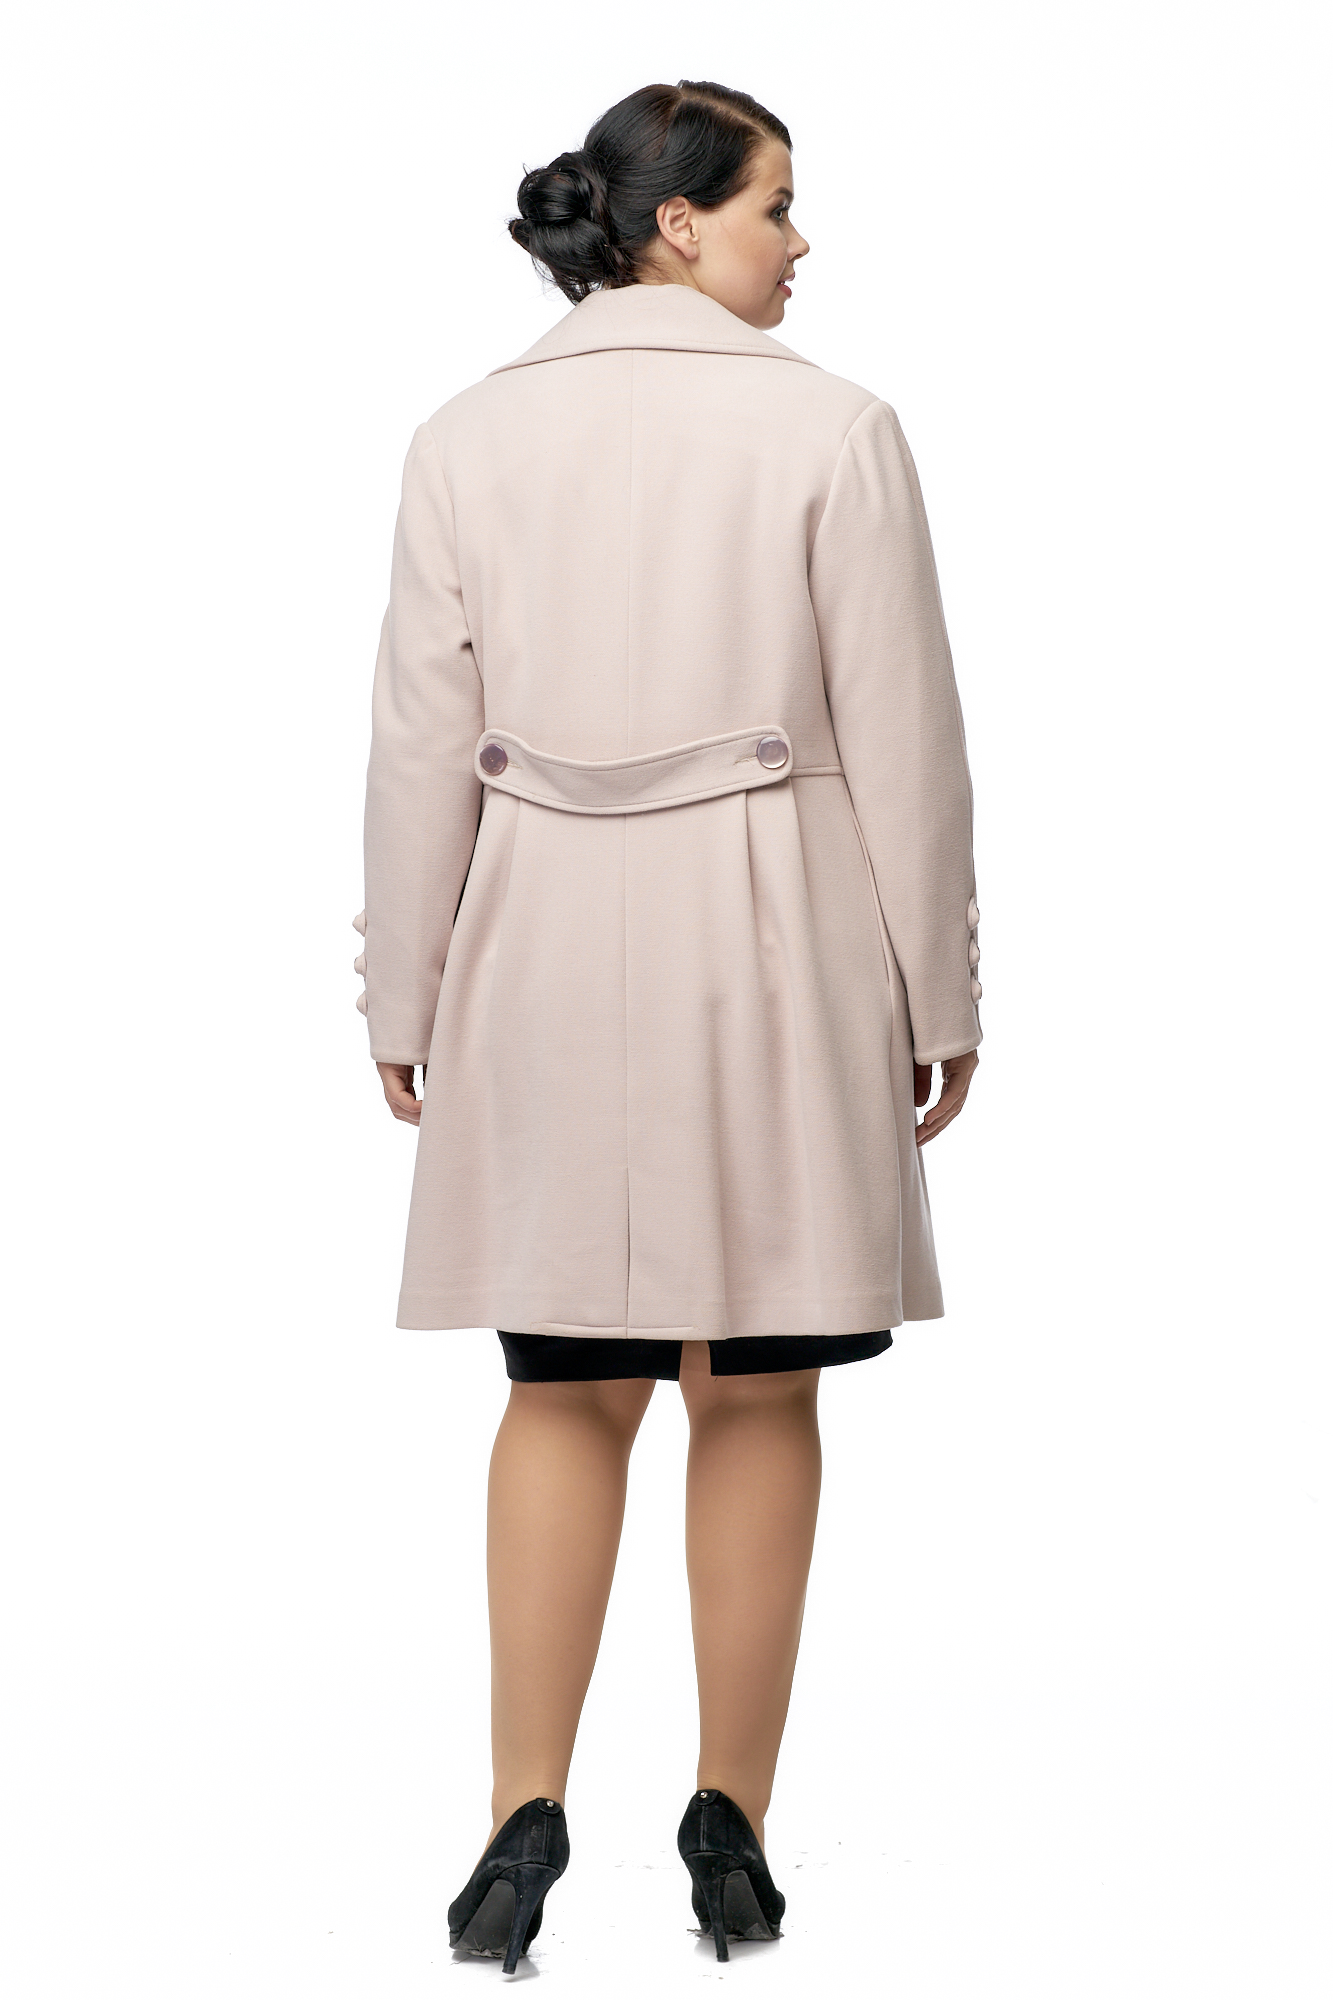 Женское пальто из текстиля с воротником 8003066-2